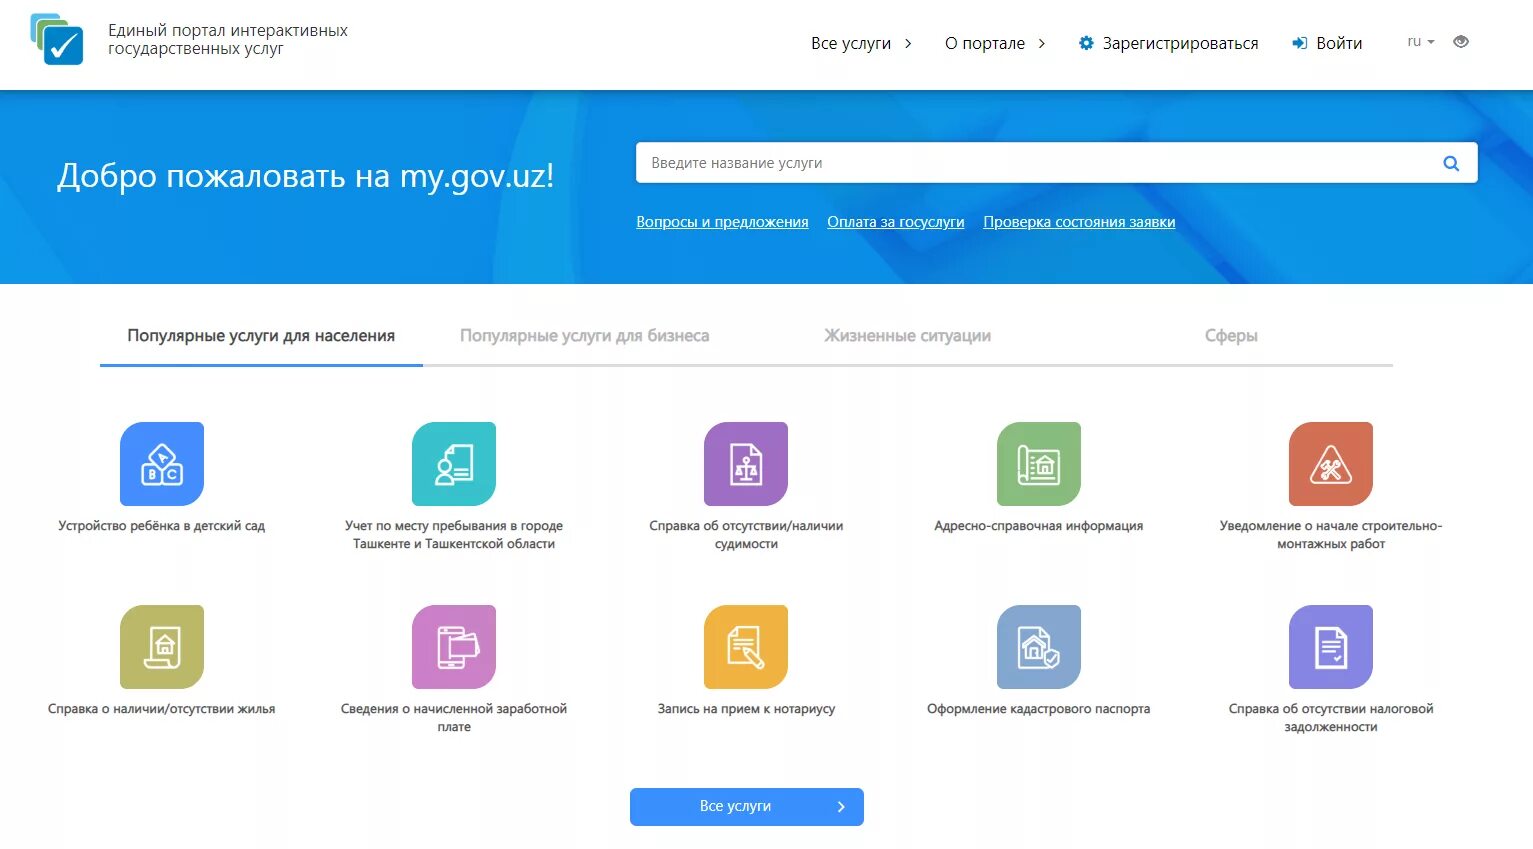 Ягона интерактив. Единый портал интерактивных государственных услуг Узбекистана.